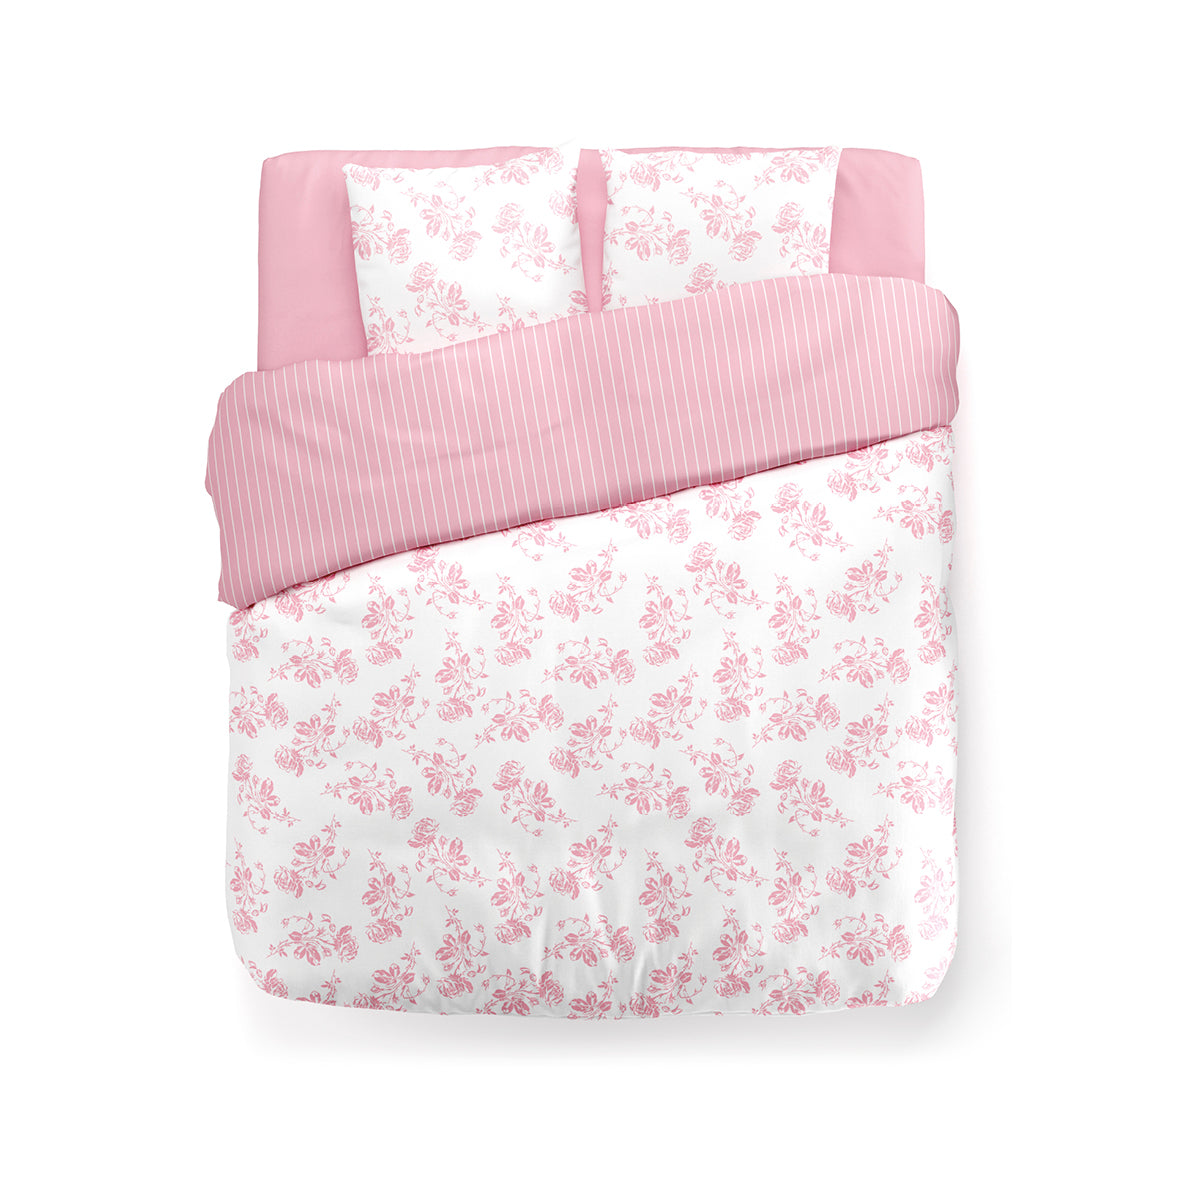 Duvet cover linen / cotton + 2 pillowcases - Roses pink Roses rose